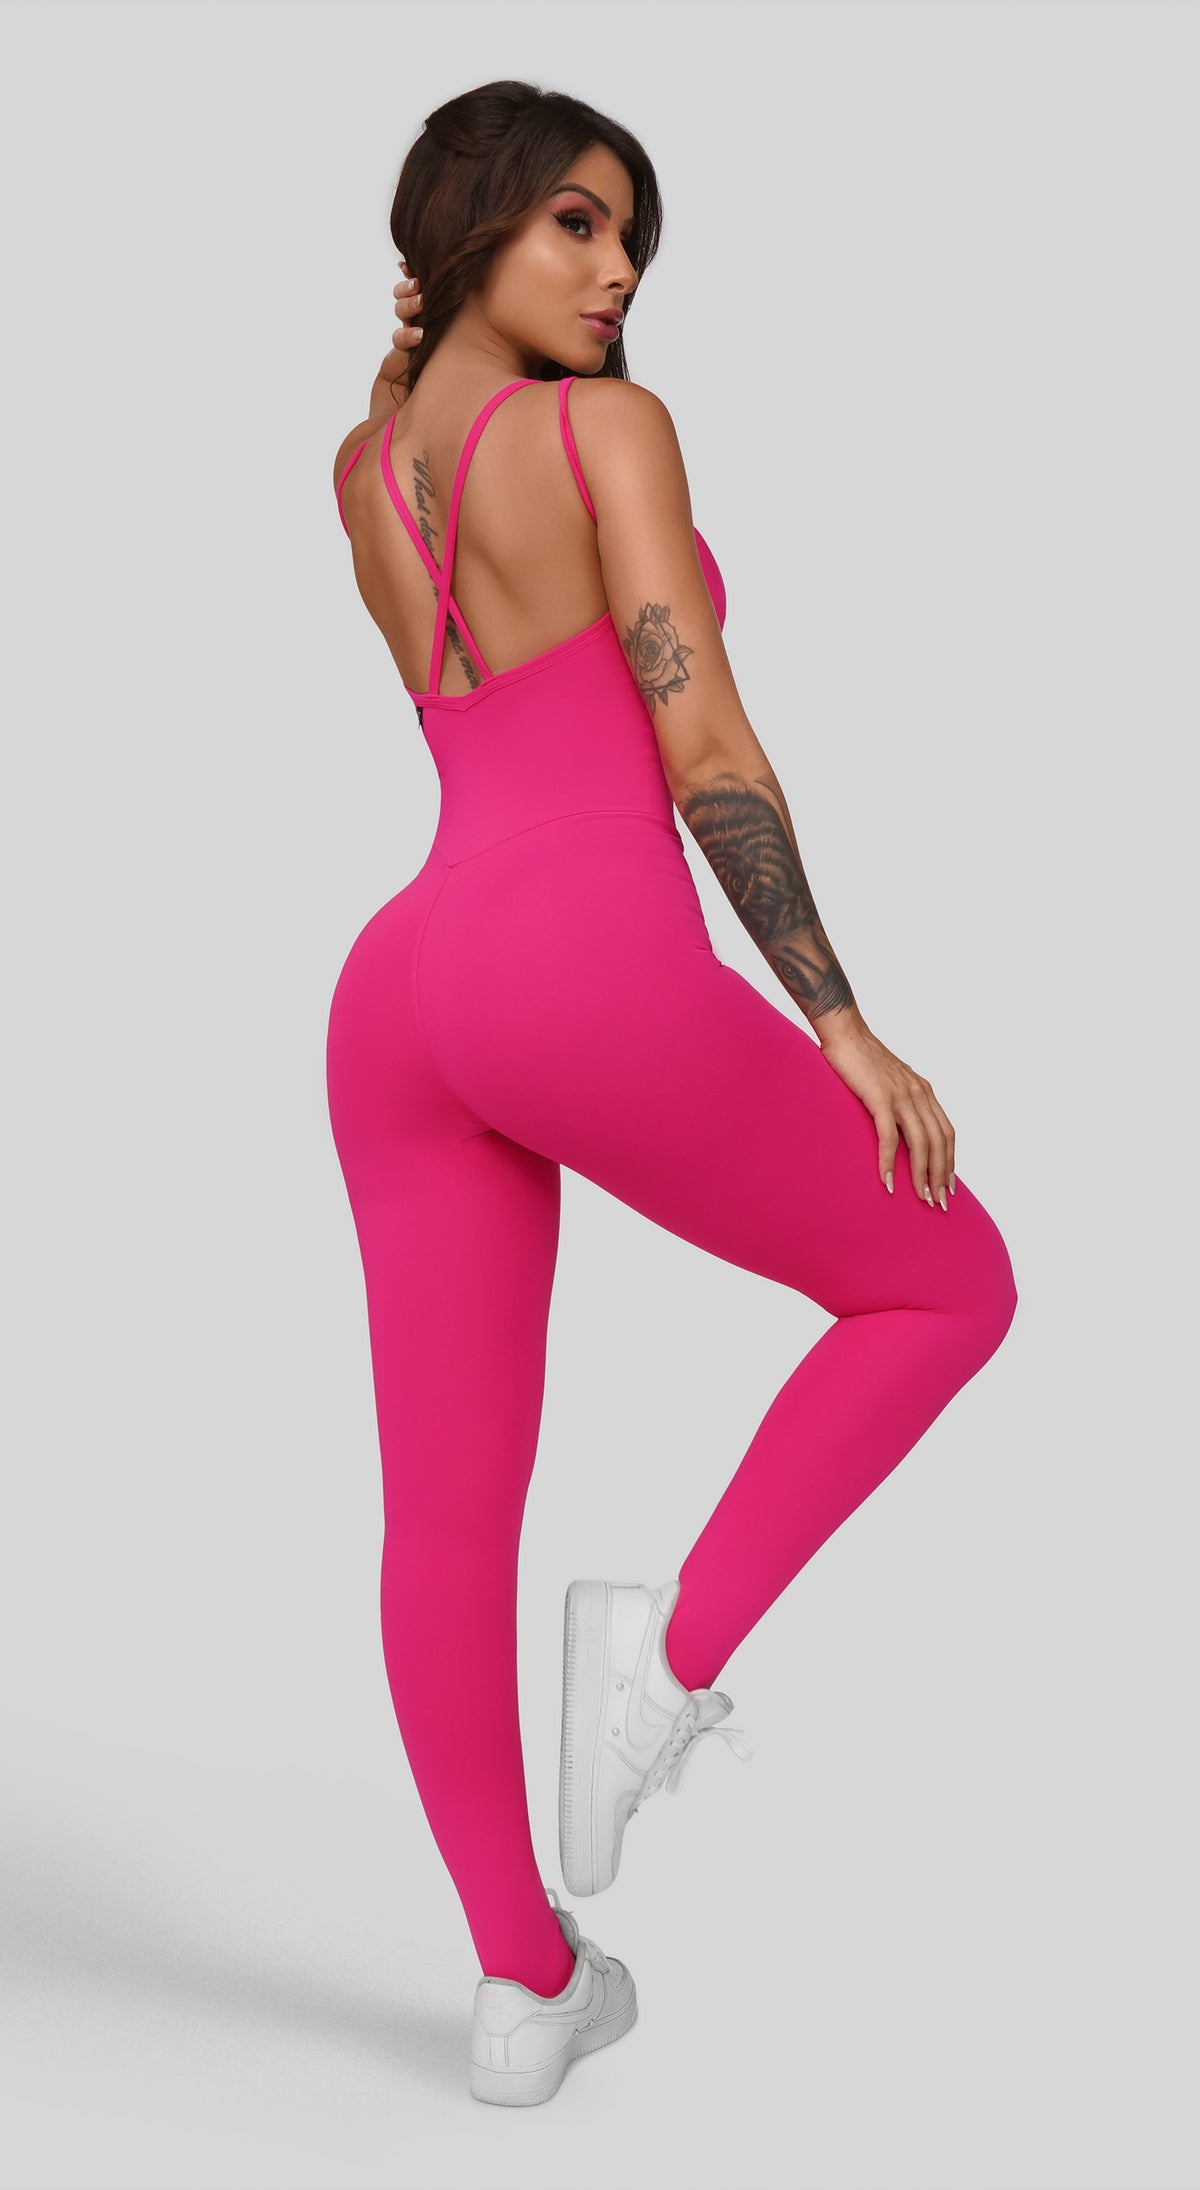 Brazilian Workout Jumpsuit - Sensation Hot Pink  Unique jumpsuits, Fitted  jumpsuit, Leggings fashion